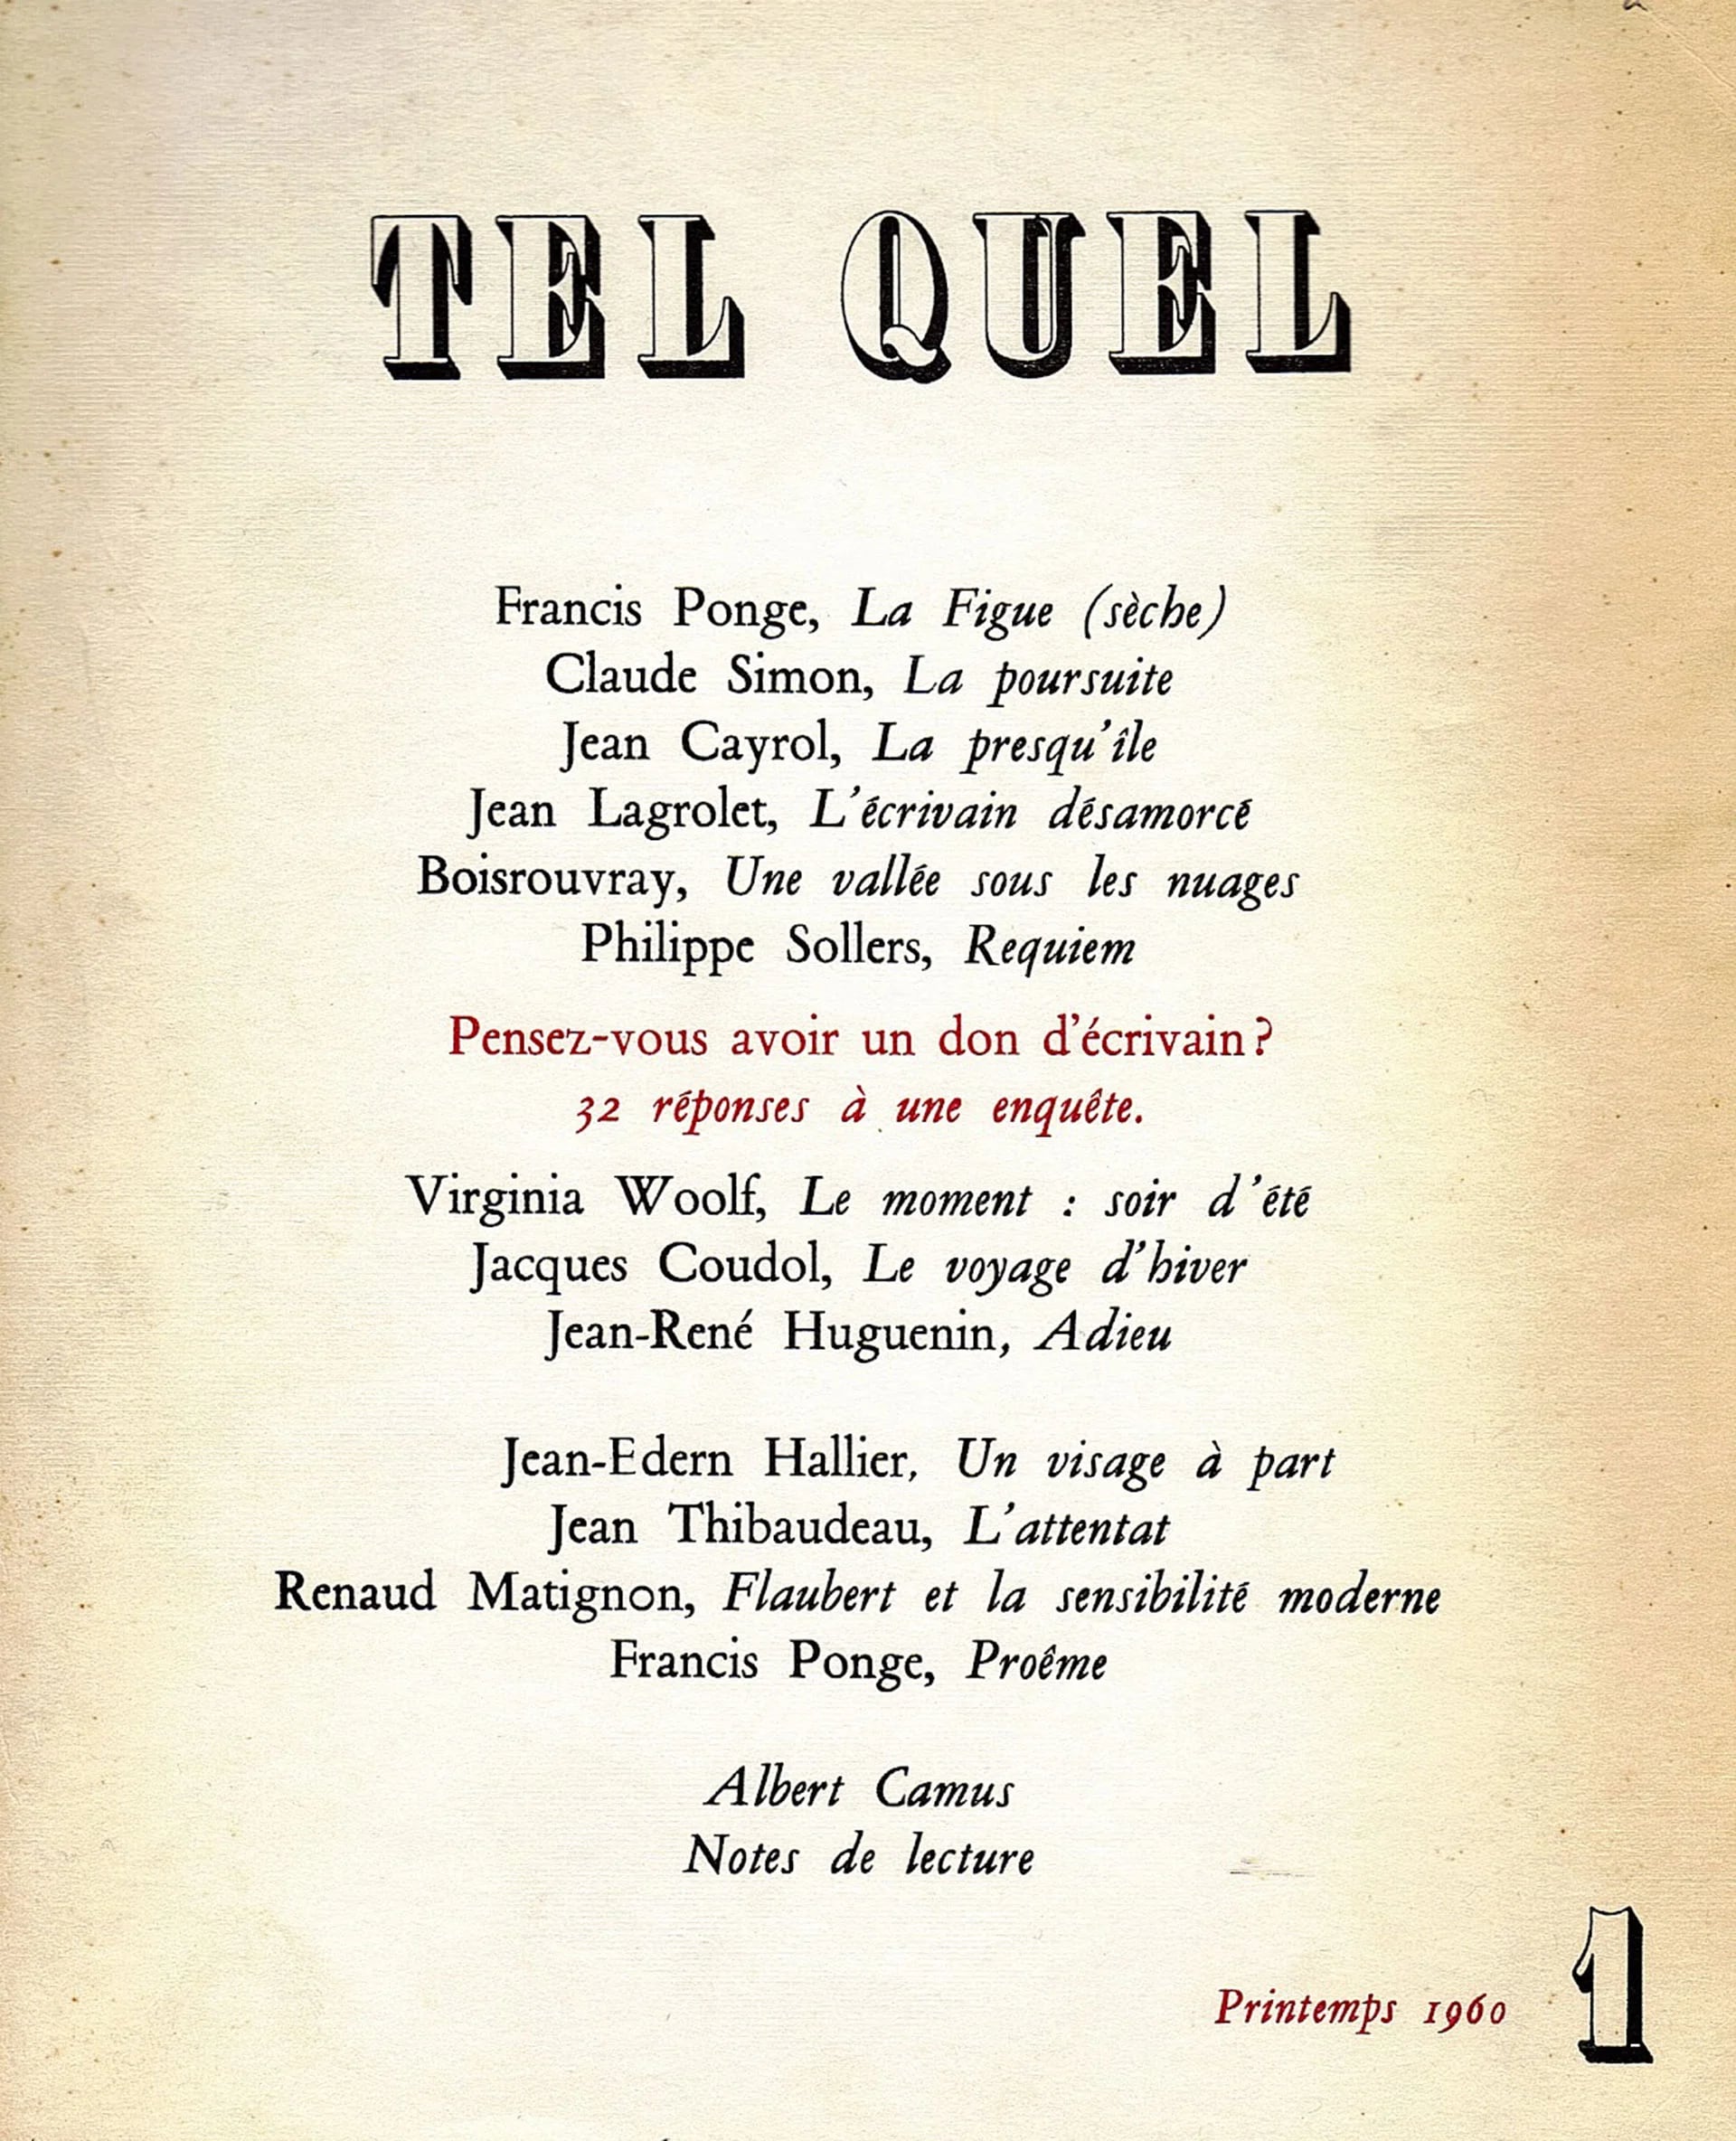 Número inicial de la revista “Tel Quel” (primavera, 1960)